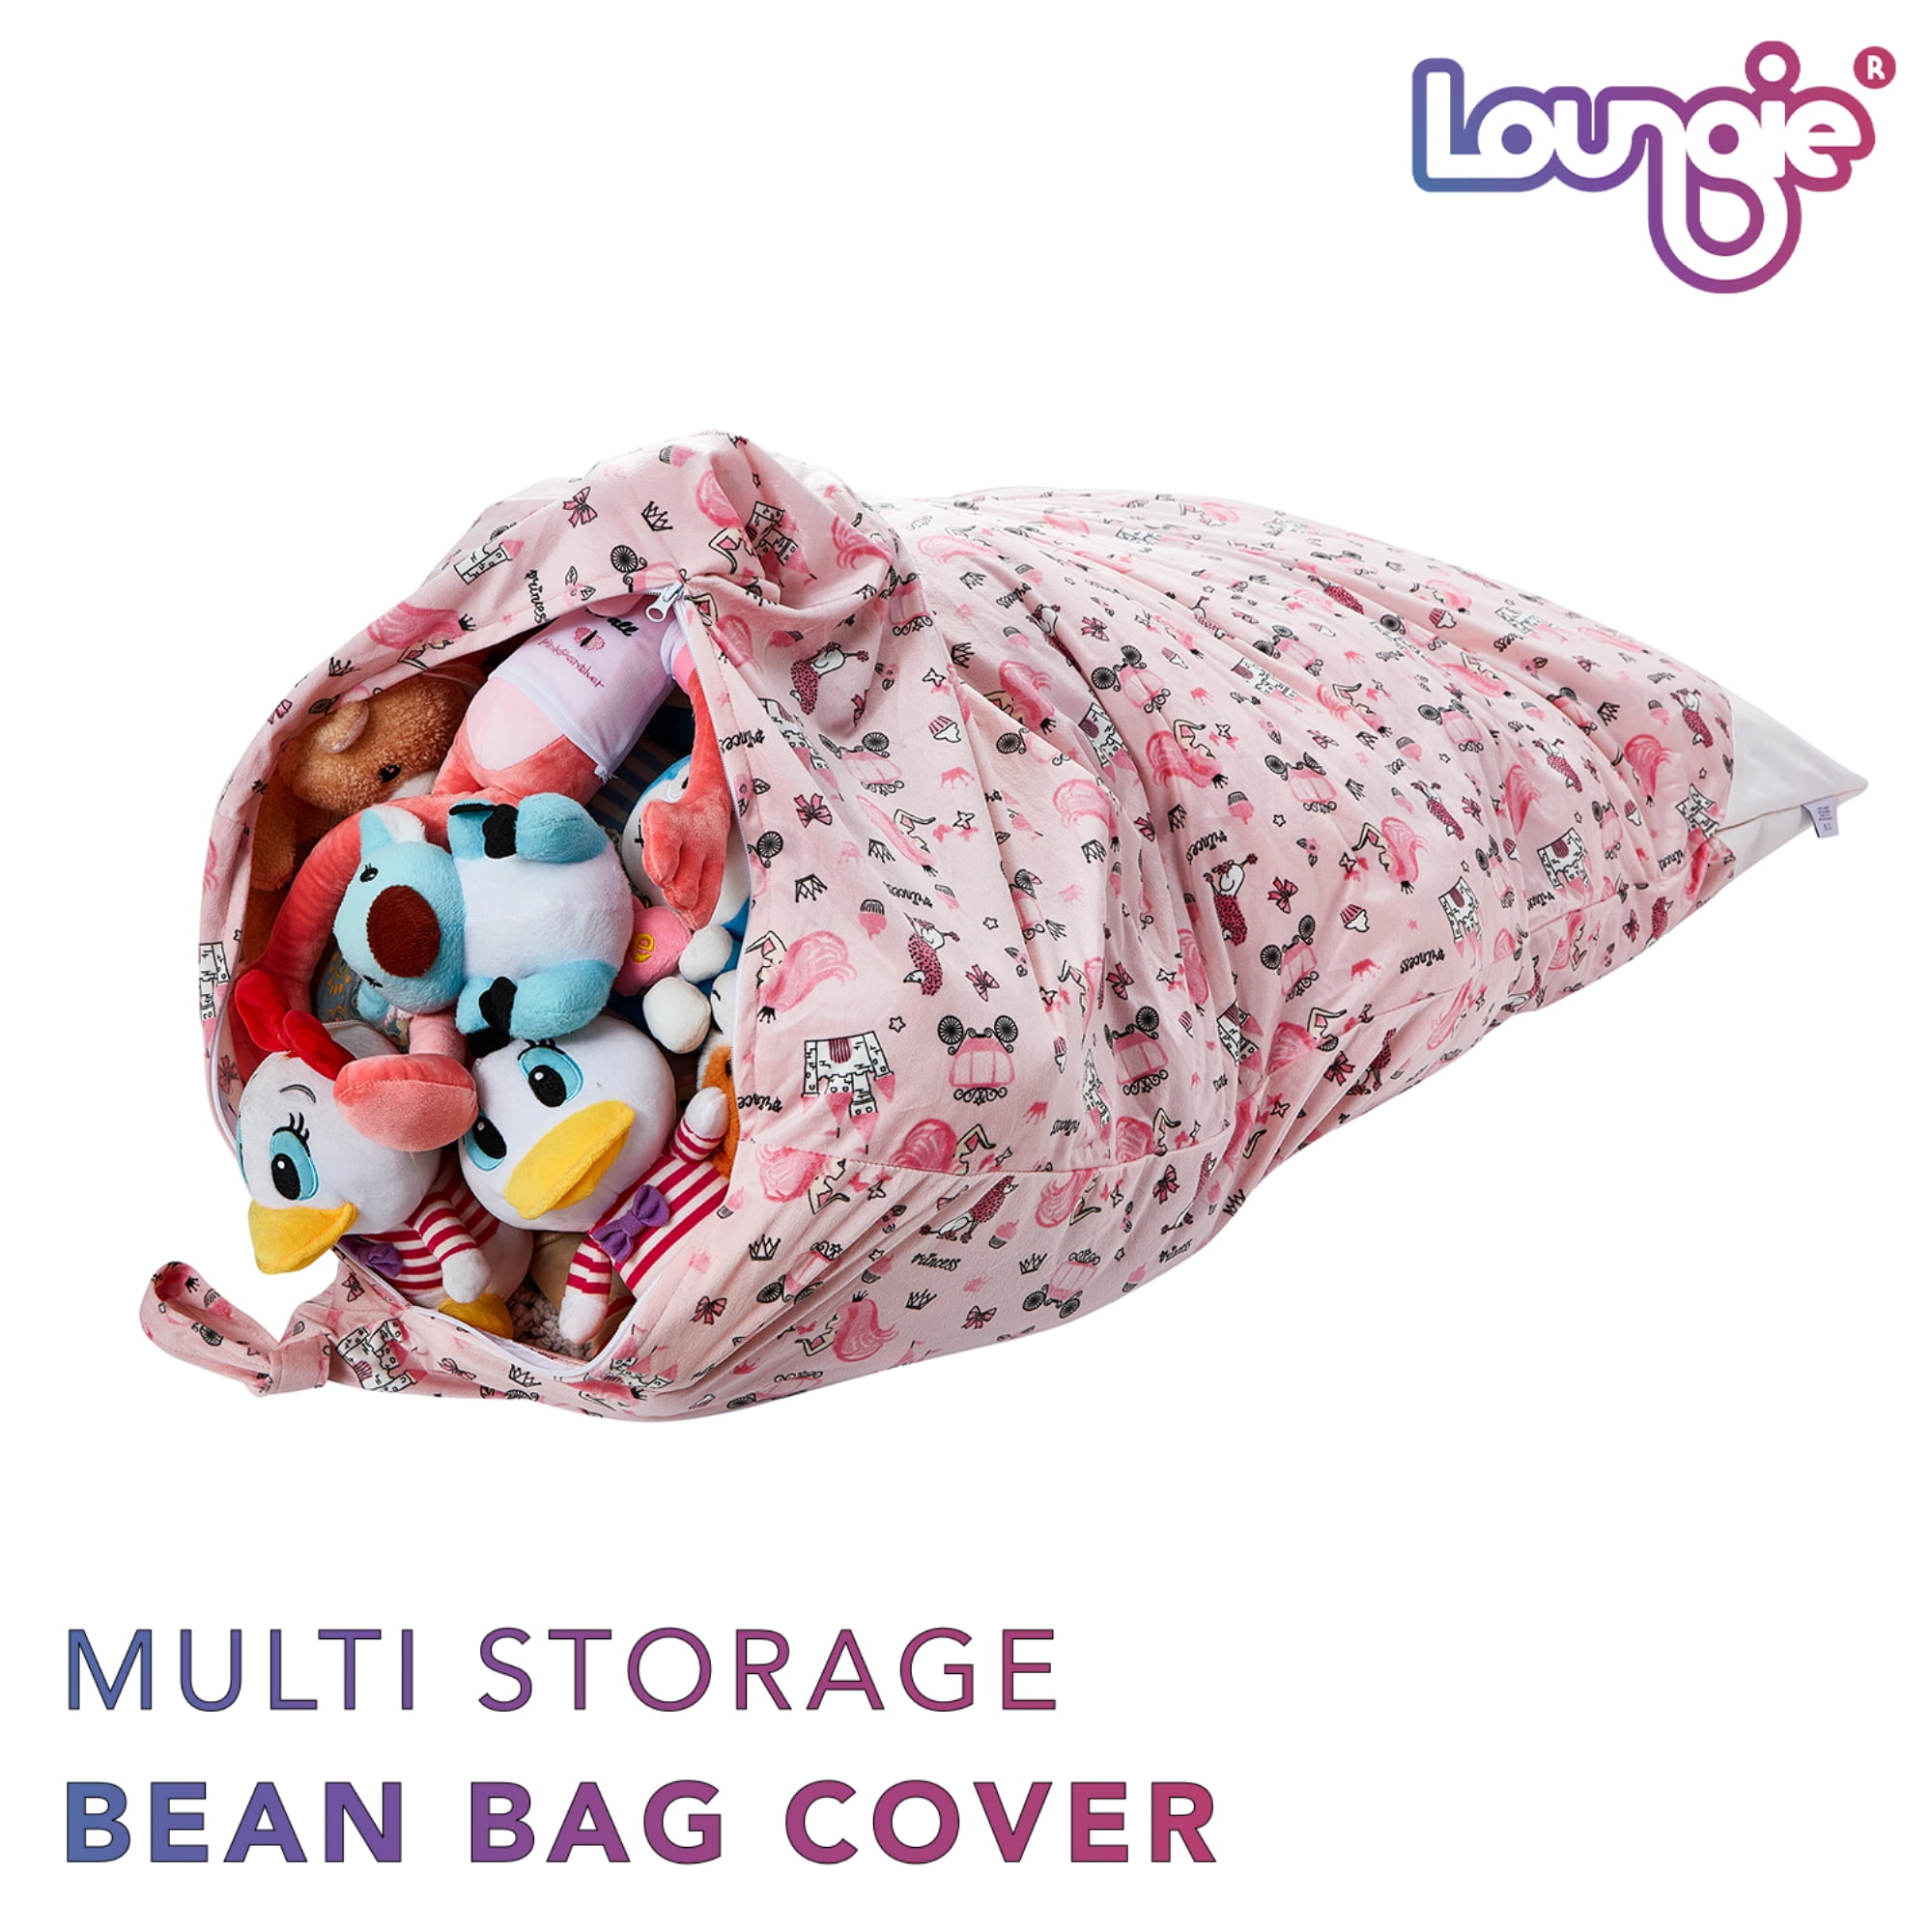 Loungie Princess Pink Bean Bag Covers Microfiber 32 in. x 32 in.